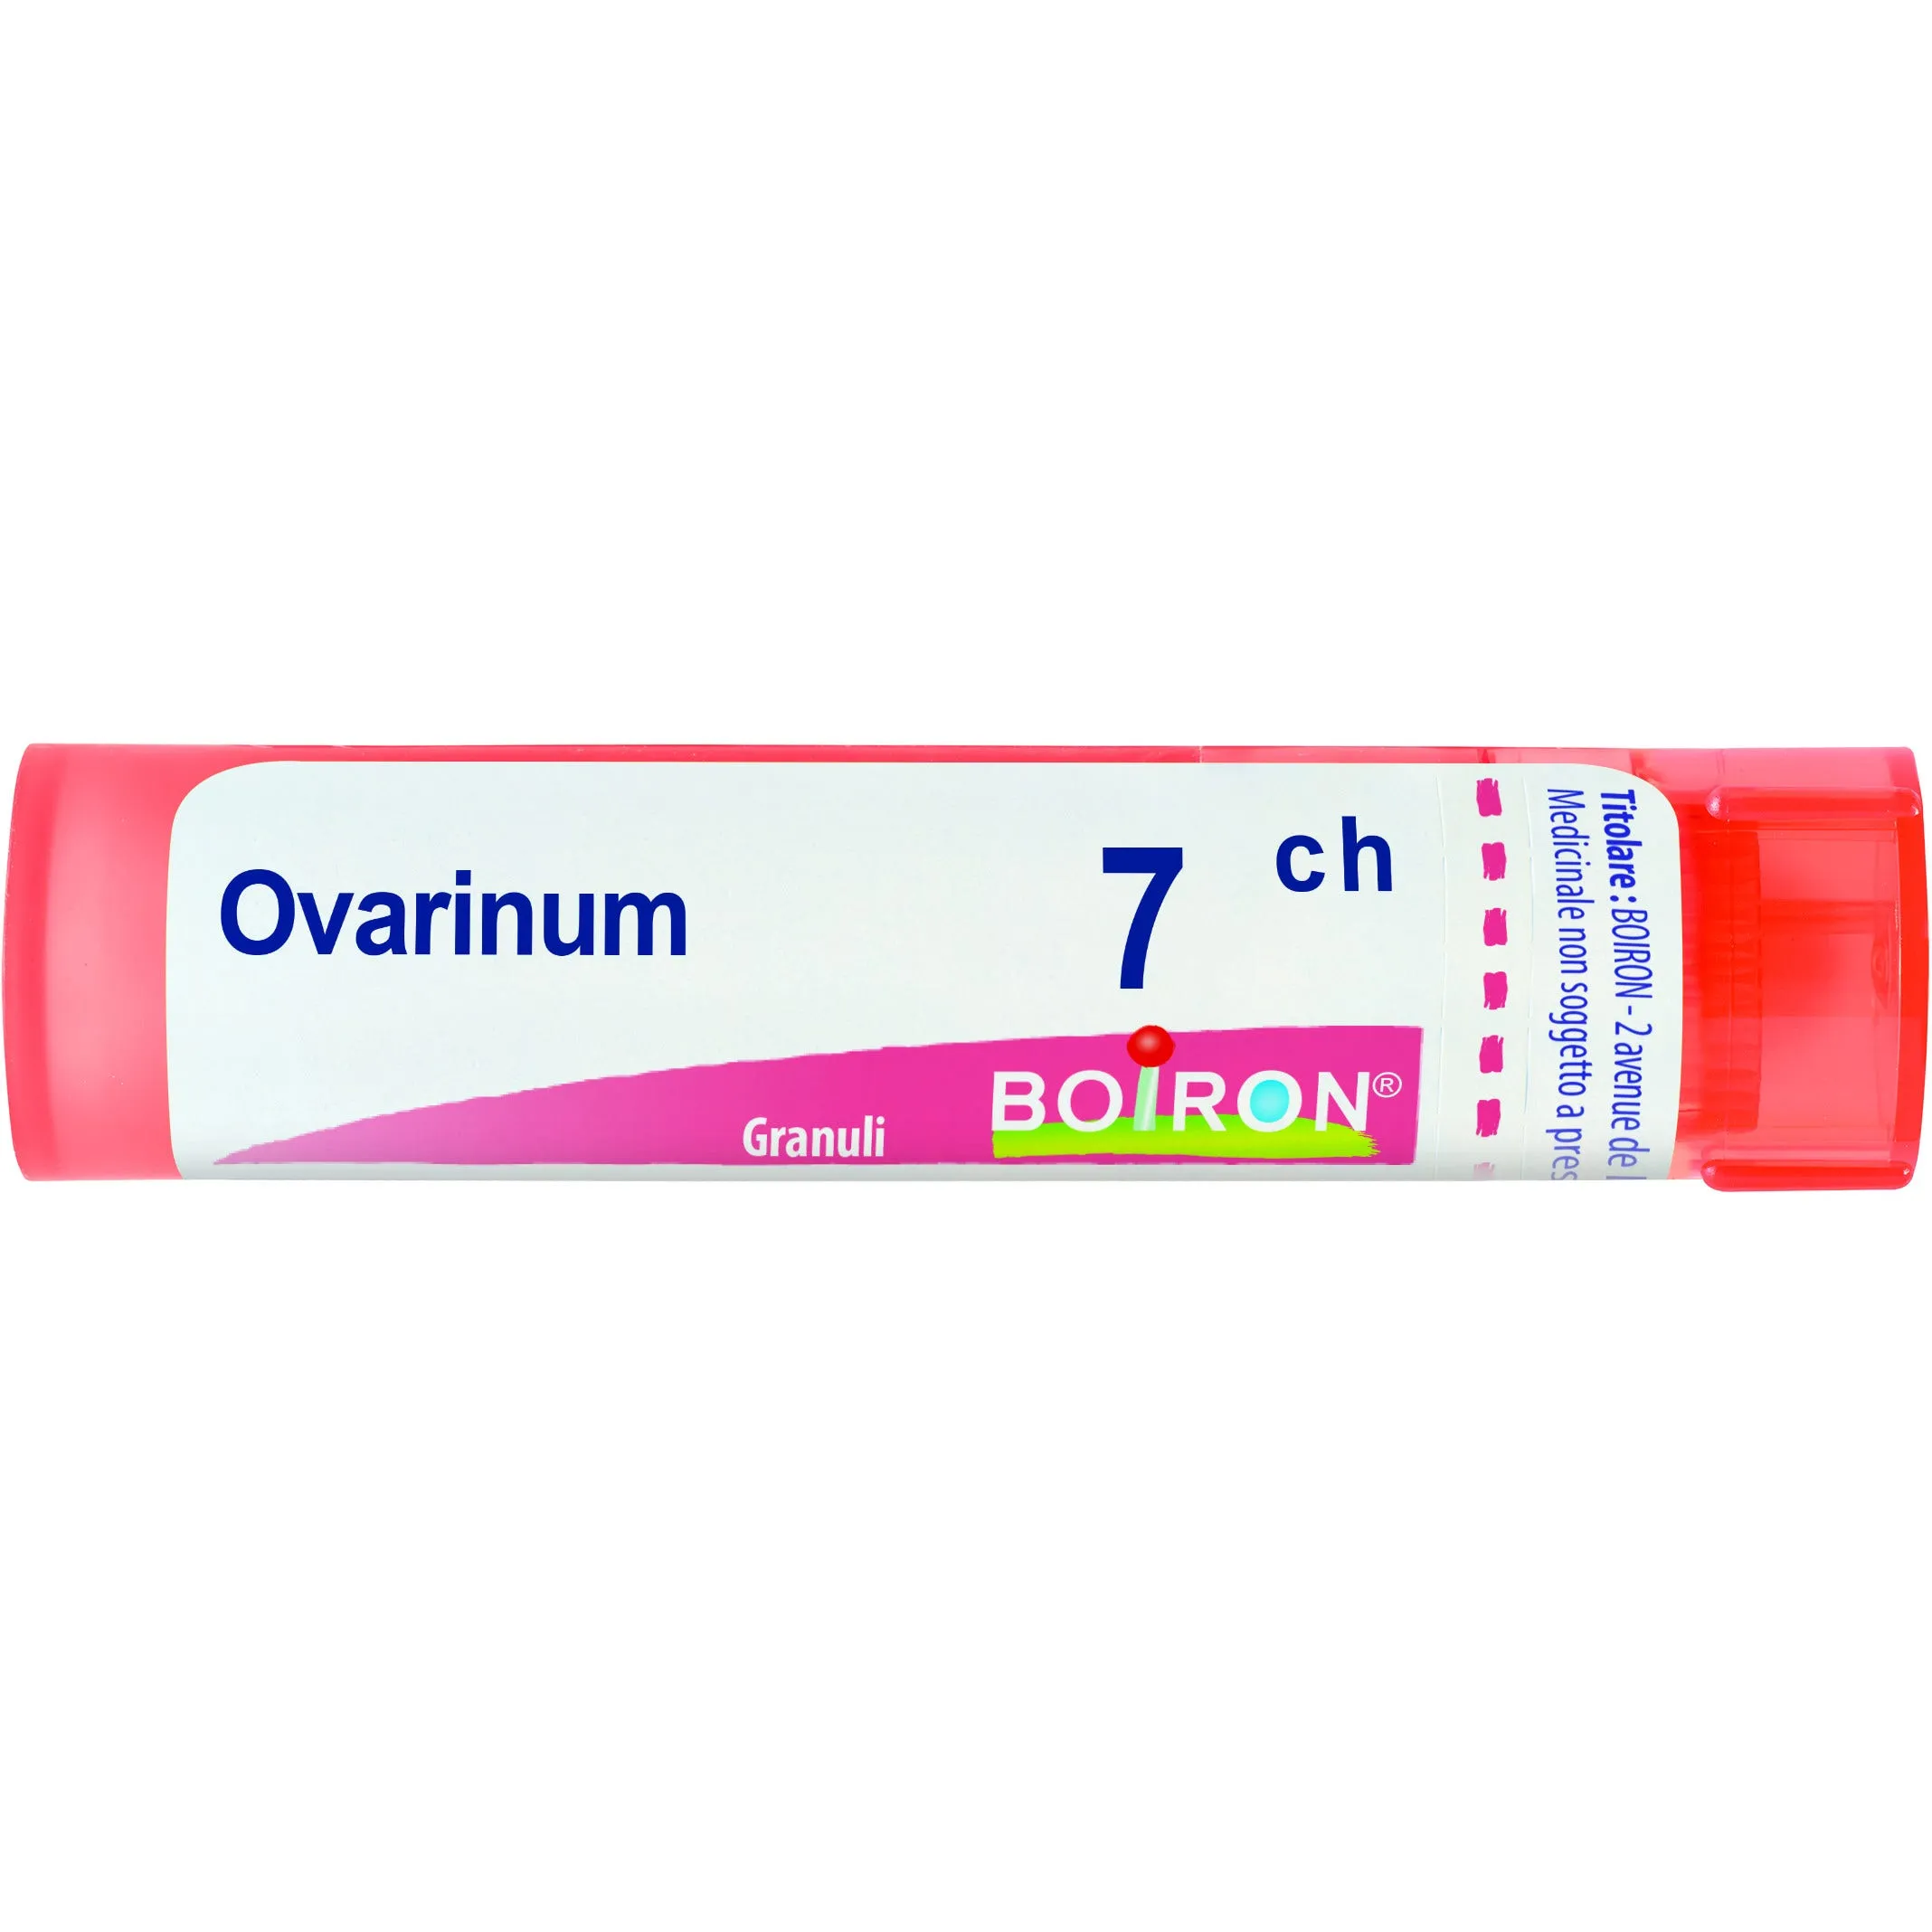 Ovarinum 7Ch Granuli